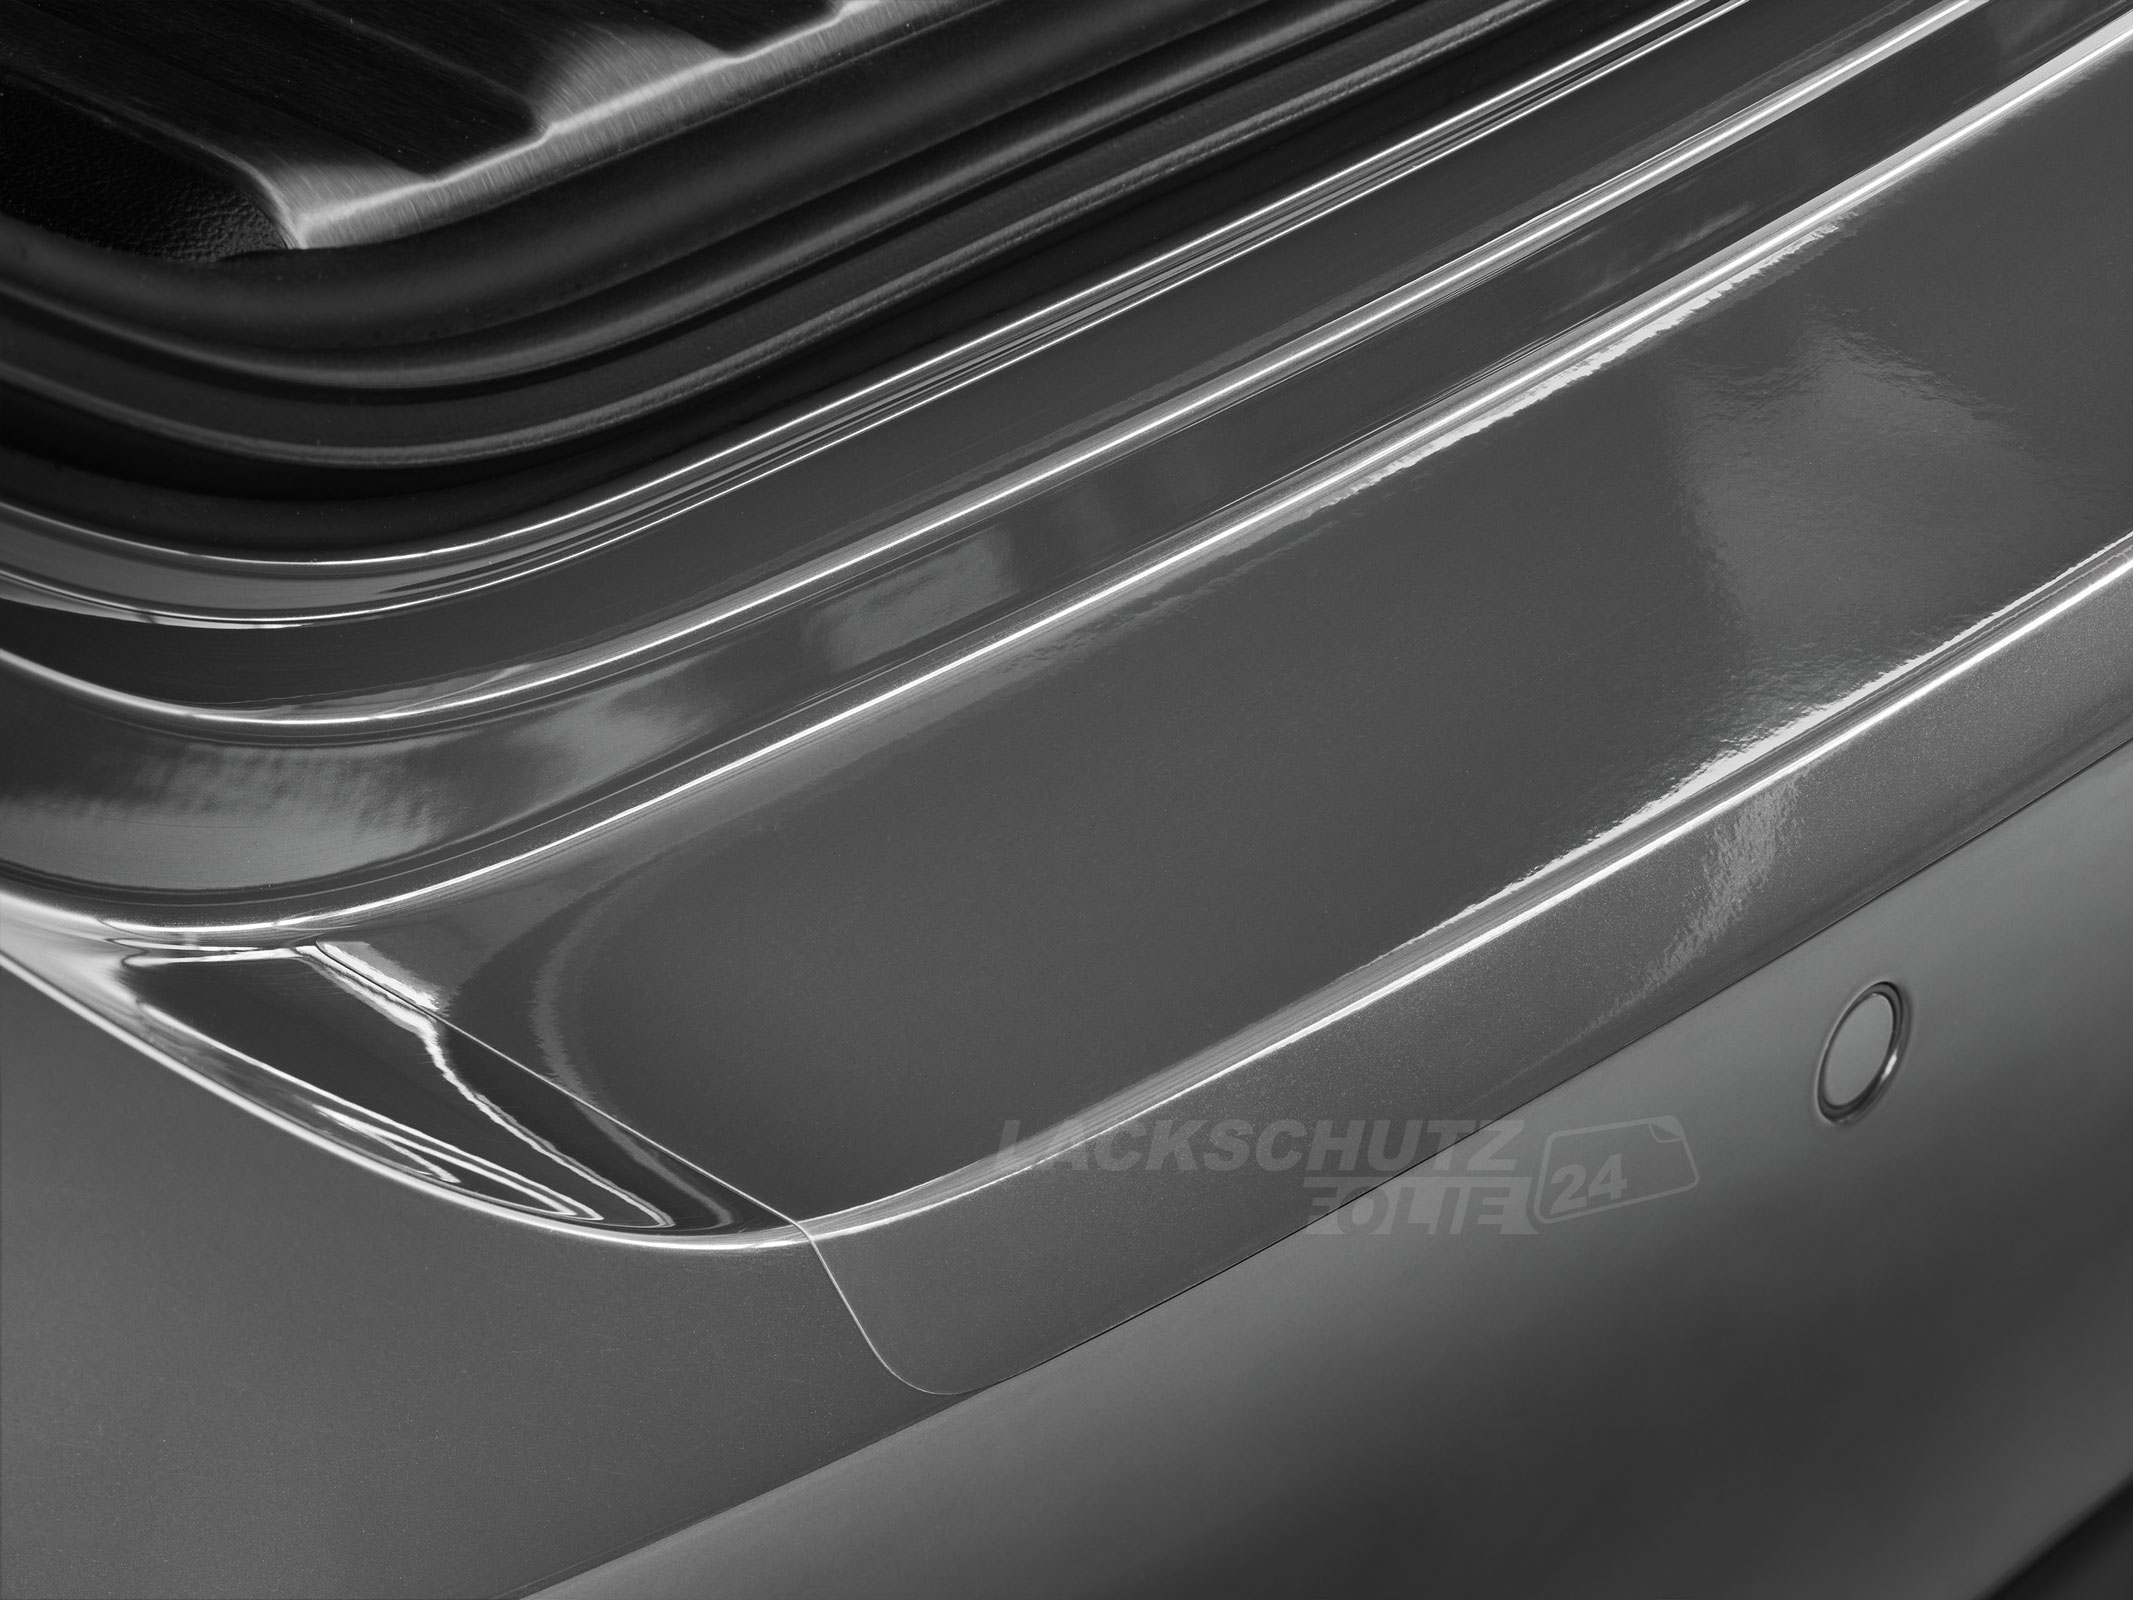 Ladekantenschutzfolie - Transparent Glatt Hochglänzend für Mazda 5 (II) Typ CW, ab BJ 10/2010